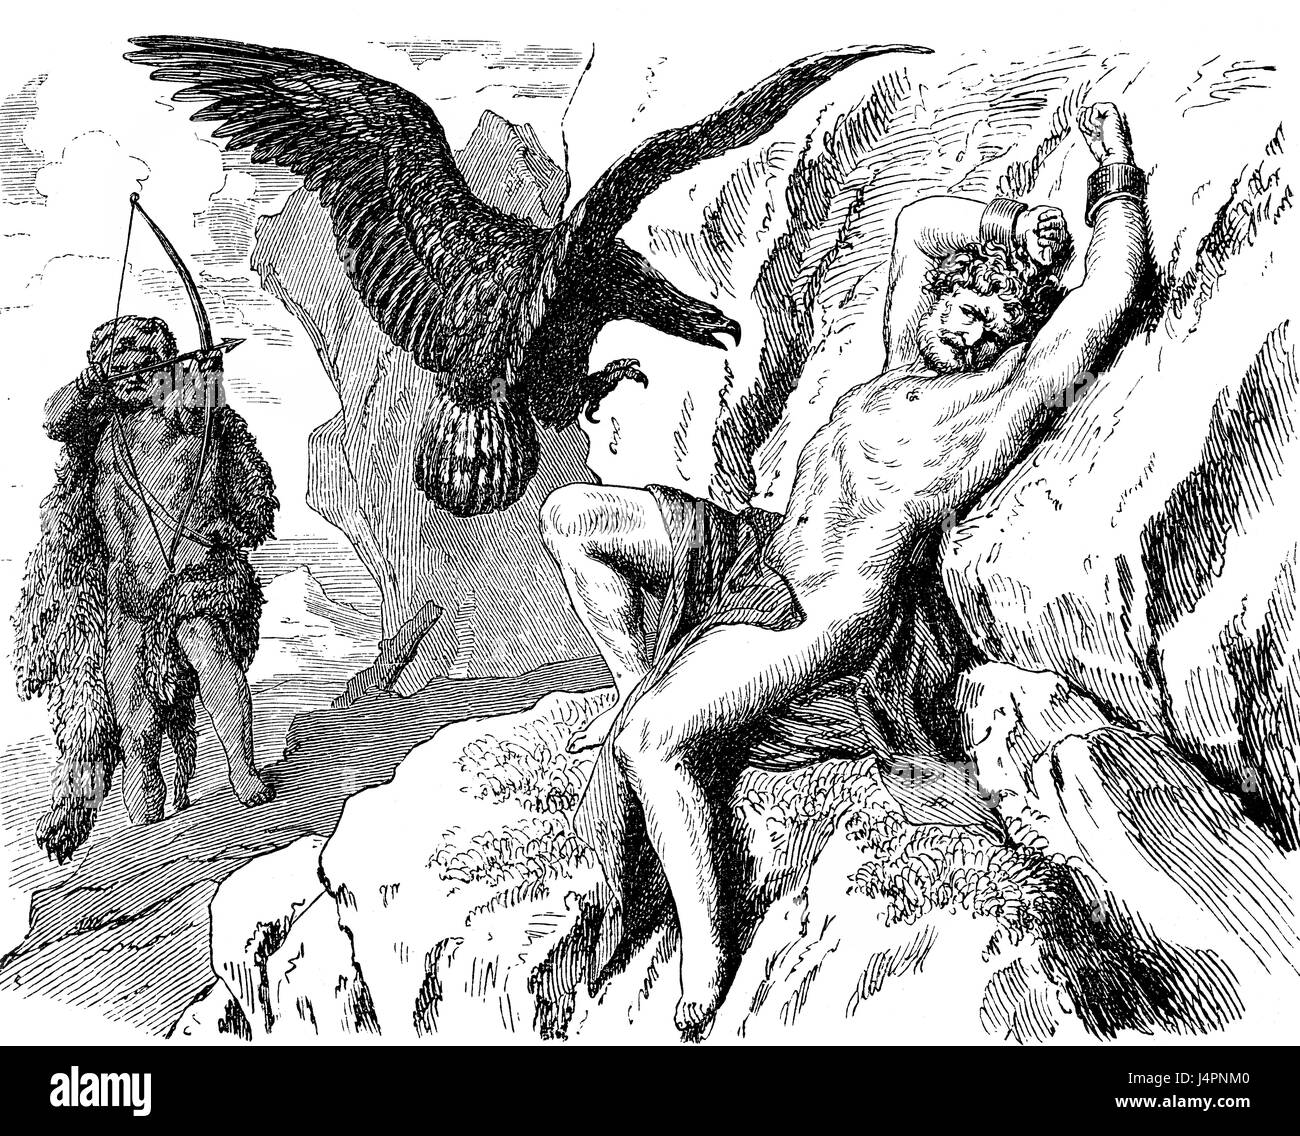 Héraclès libérant Prométhée de ses tourments par l'aigle, la mythologie grecque Banque D'Images